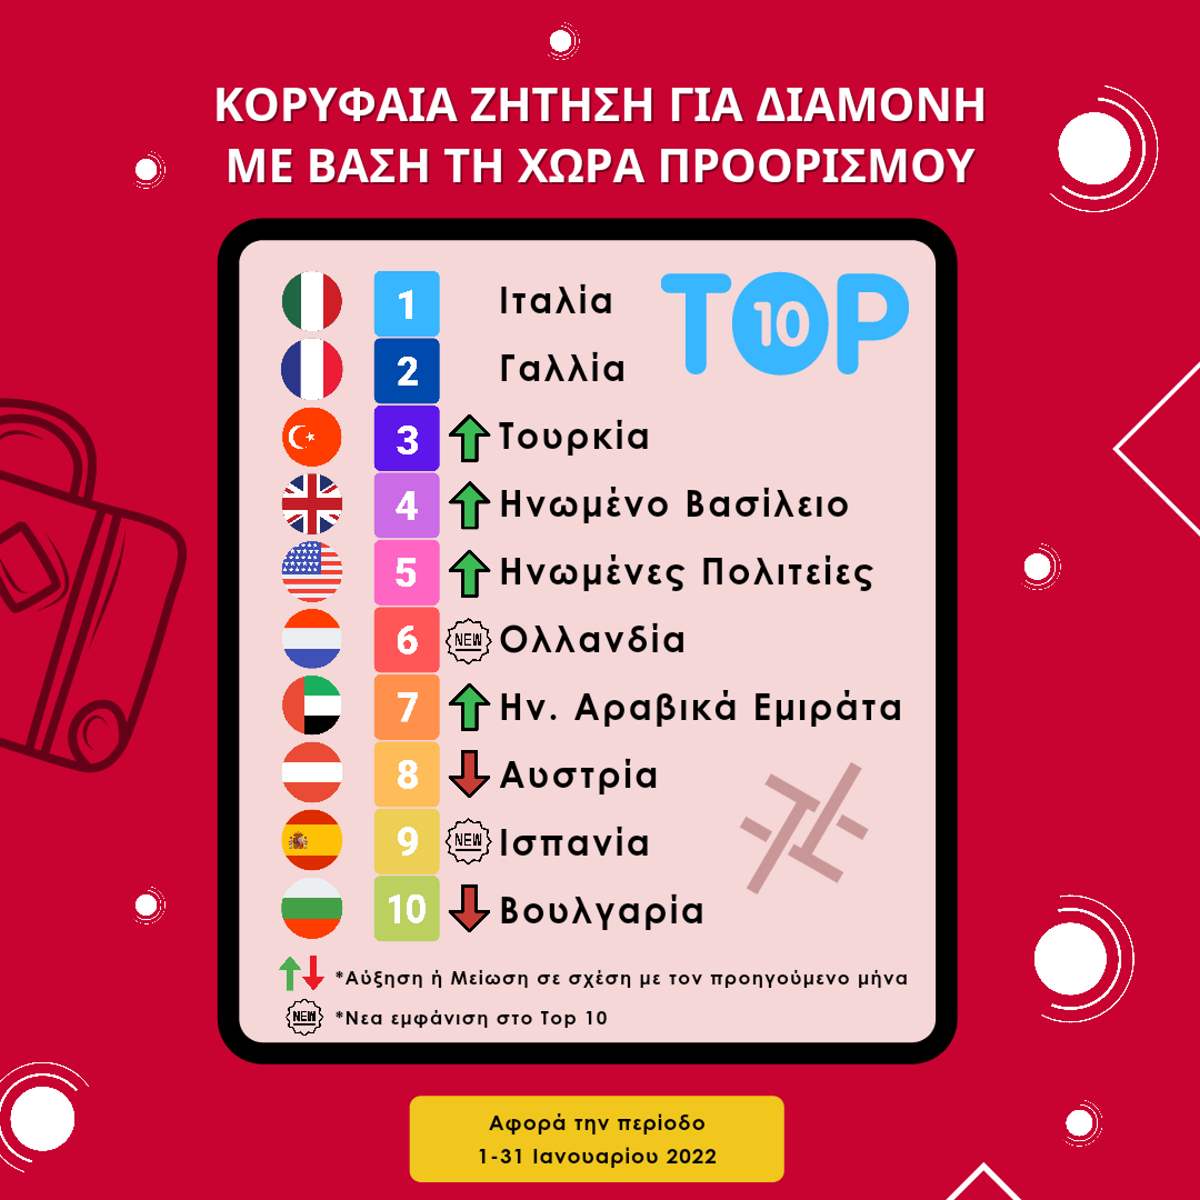 Οι top προορισμοί που αναζήτησαν οι Έλληνες για τον Ιανουάριο 2022